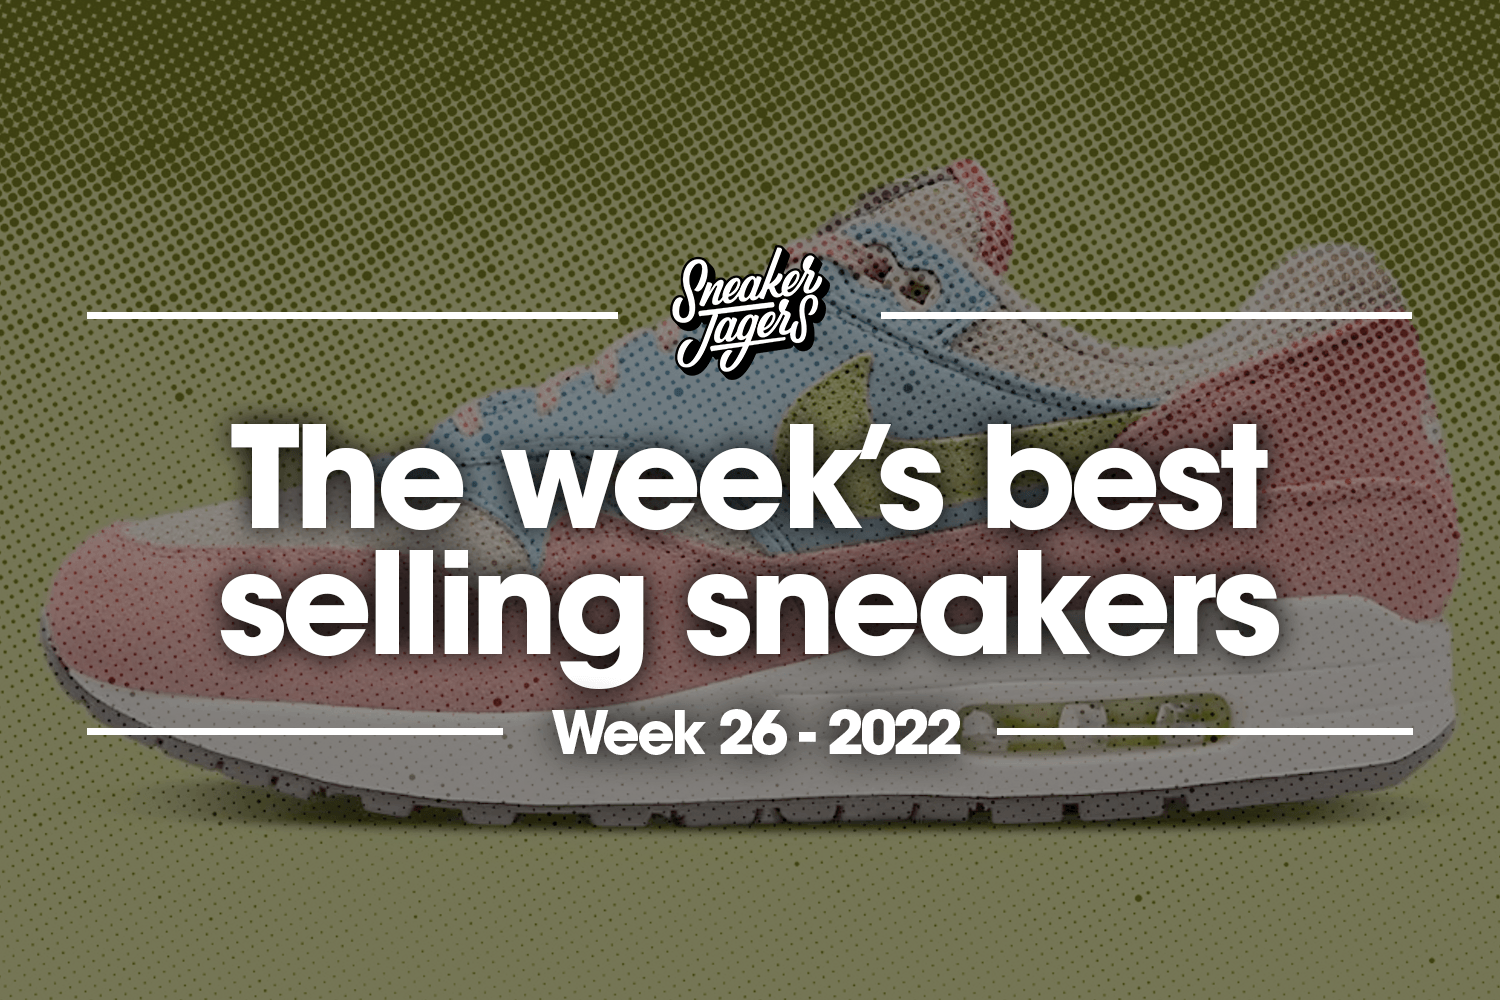 The 5 best-selling sneakers of week 26